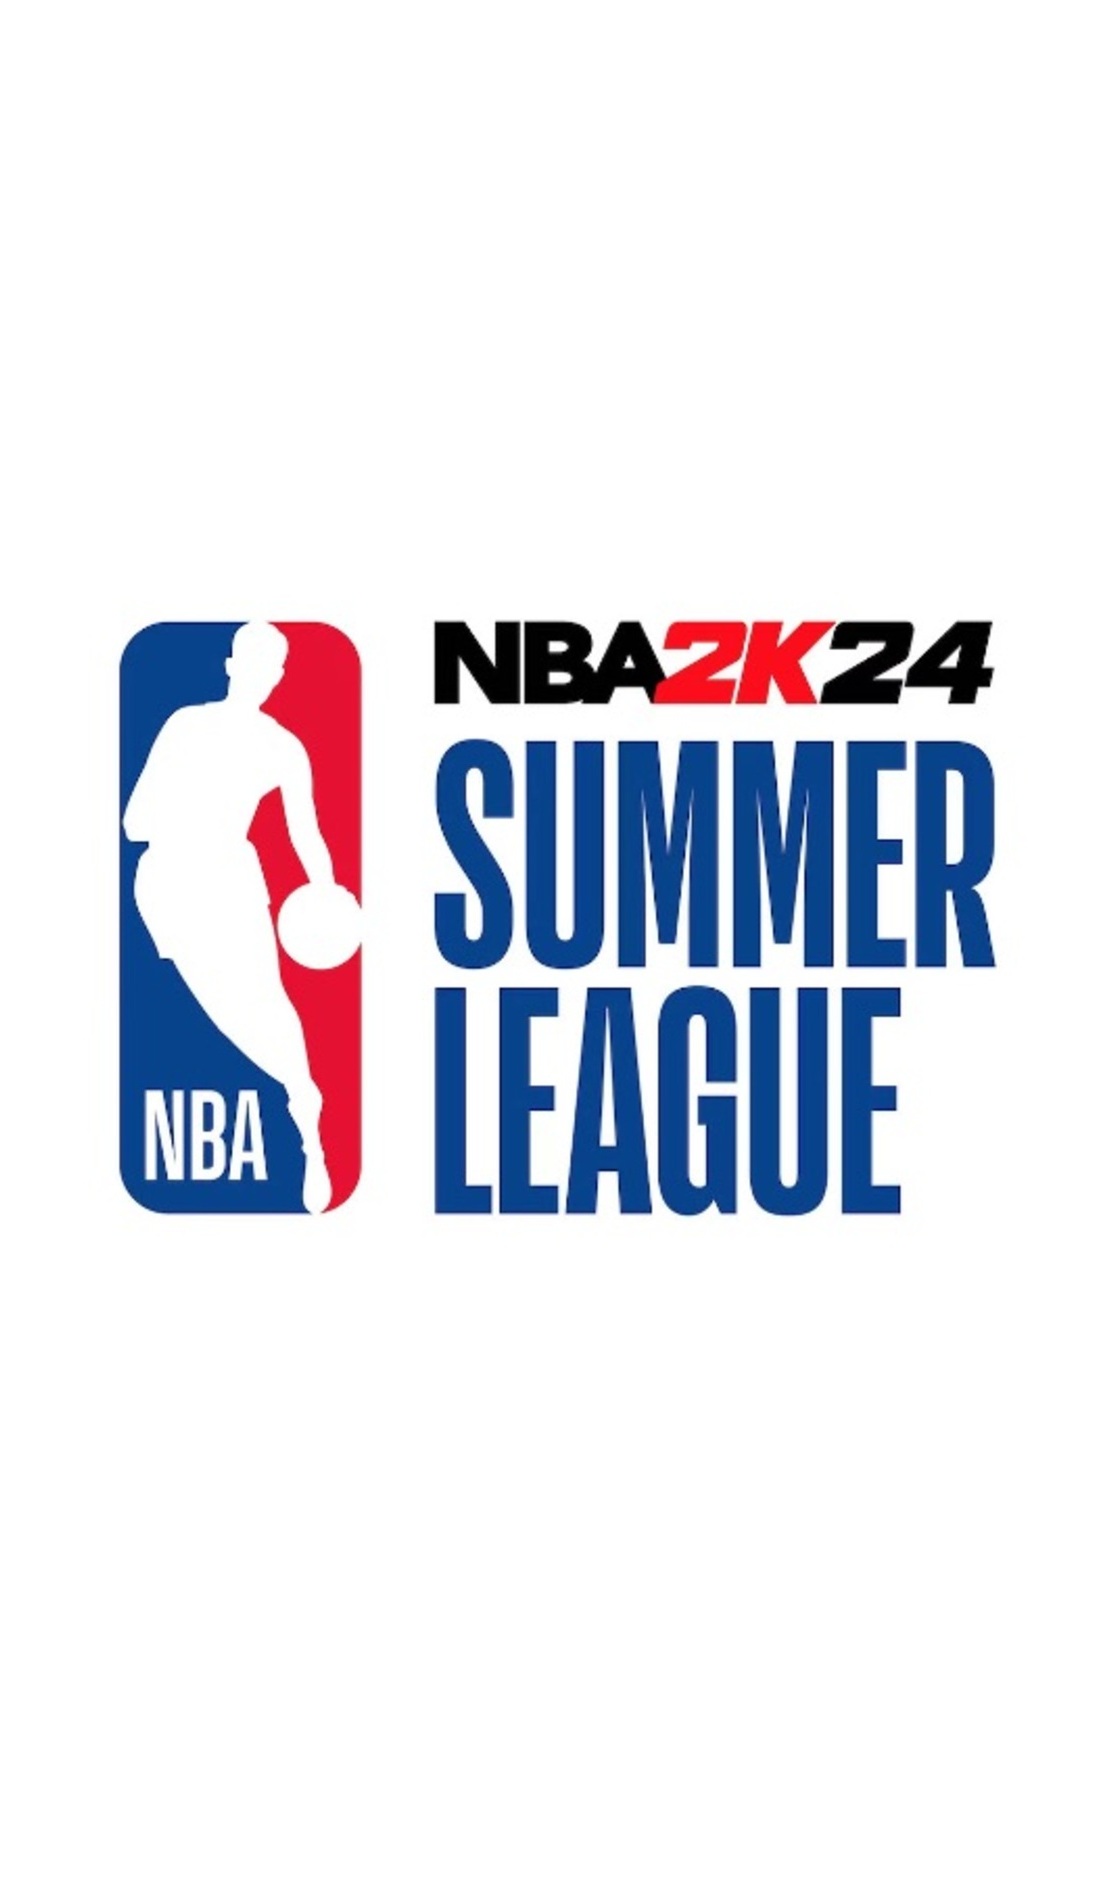 A NBA Summer League live event